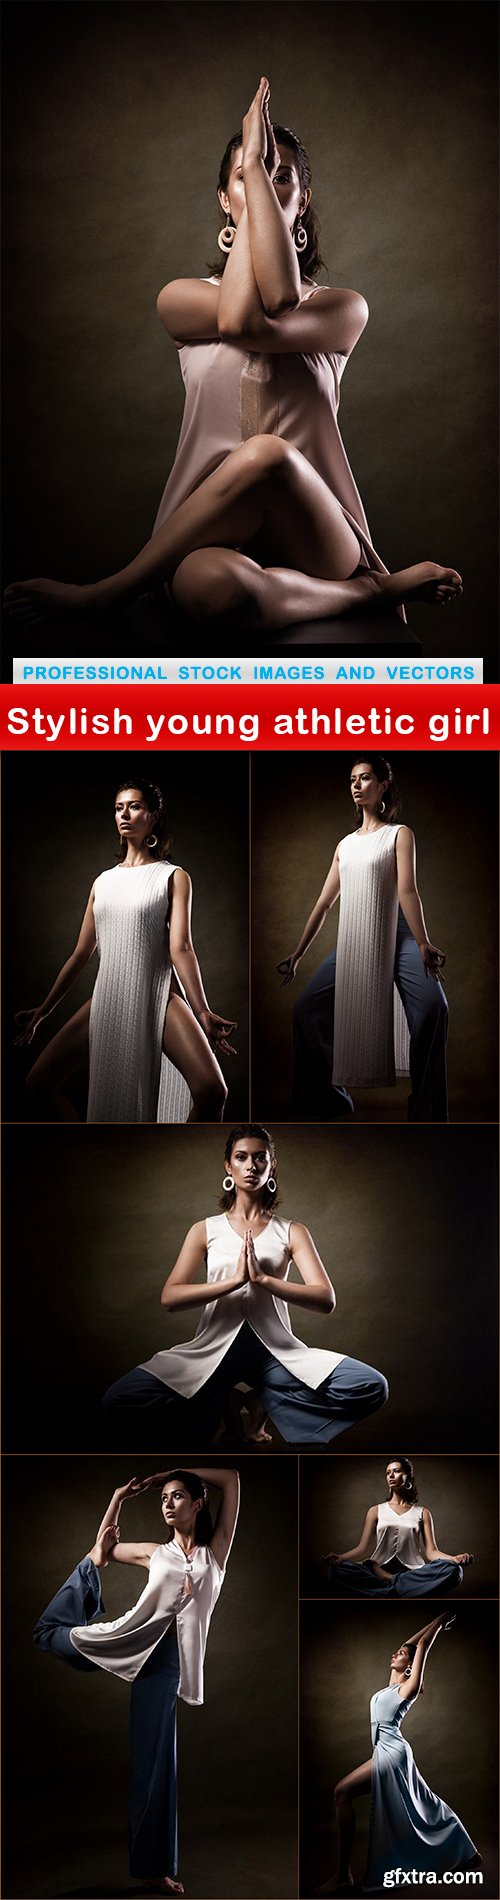 Stylish young athletic girl - 7 UHQ JPEG